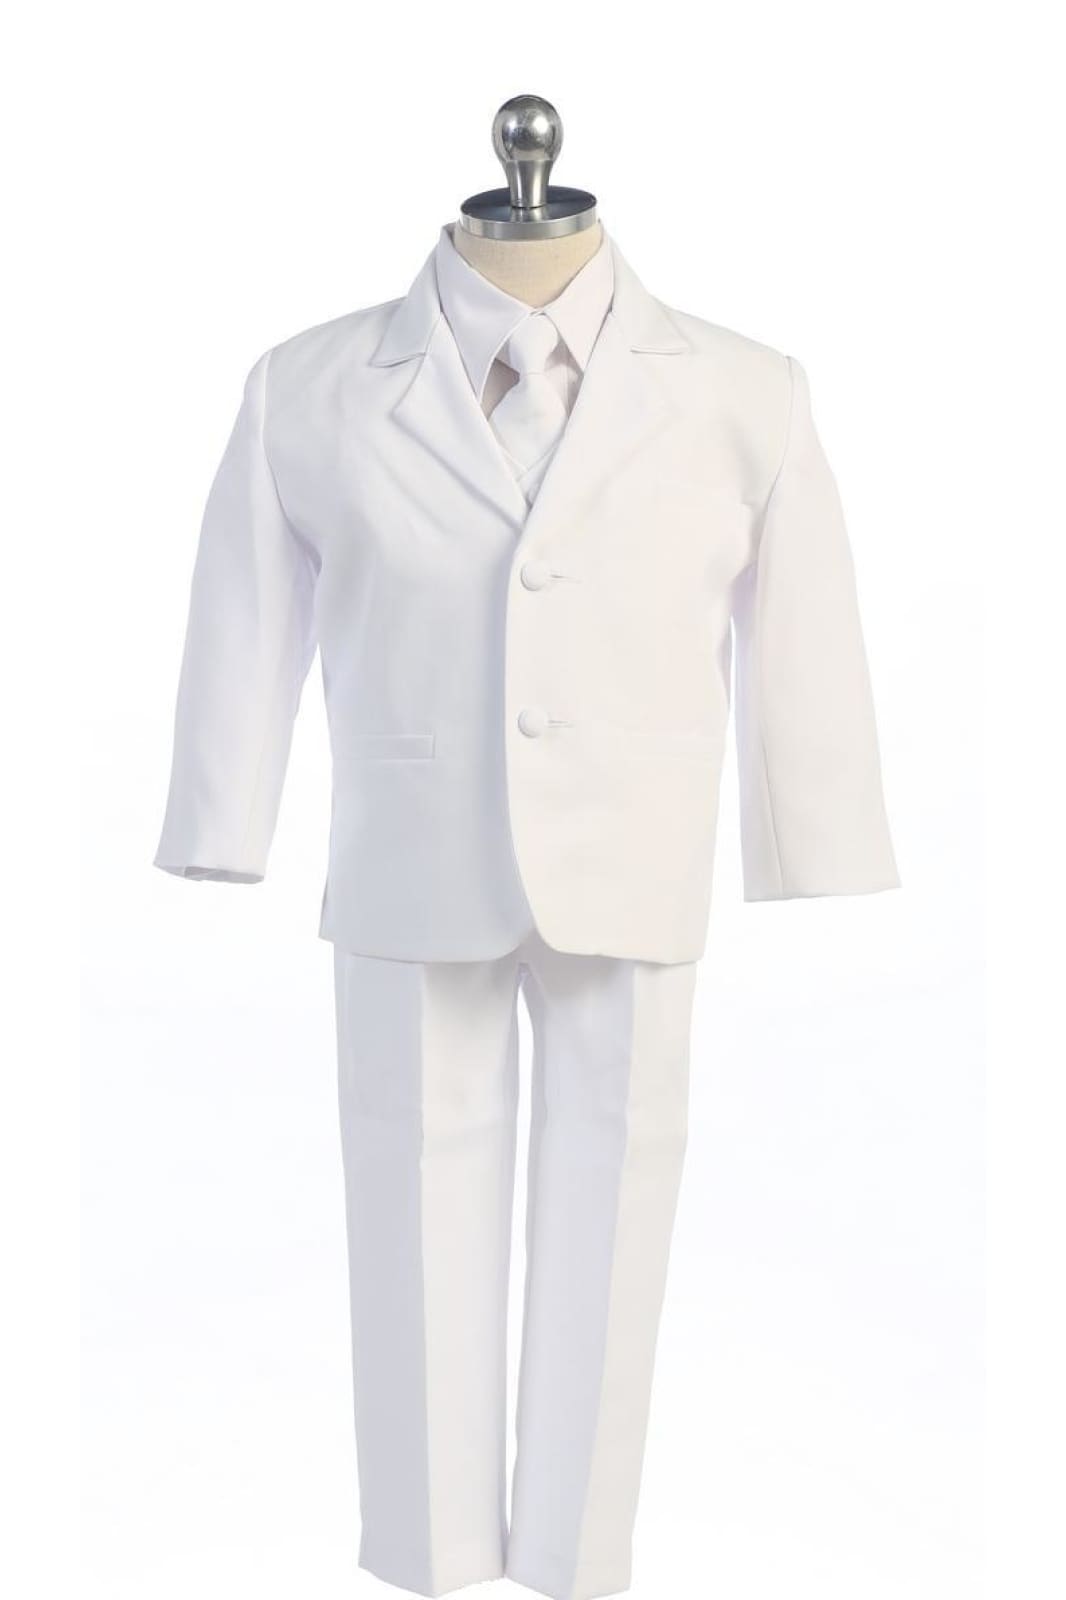 LA Merchandise LA8201 5 pc Ring Boys Suit with Vest & Tie - White - Boys suits LA Merchandise